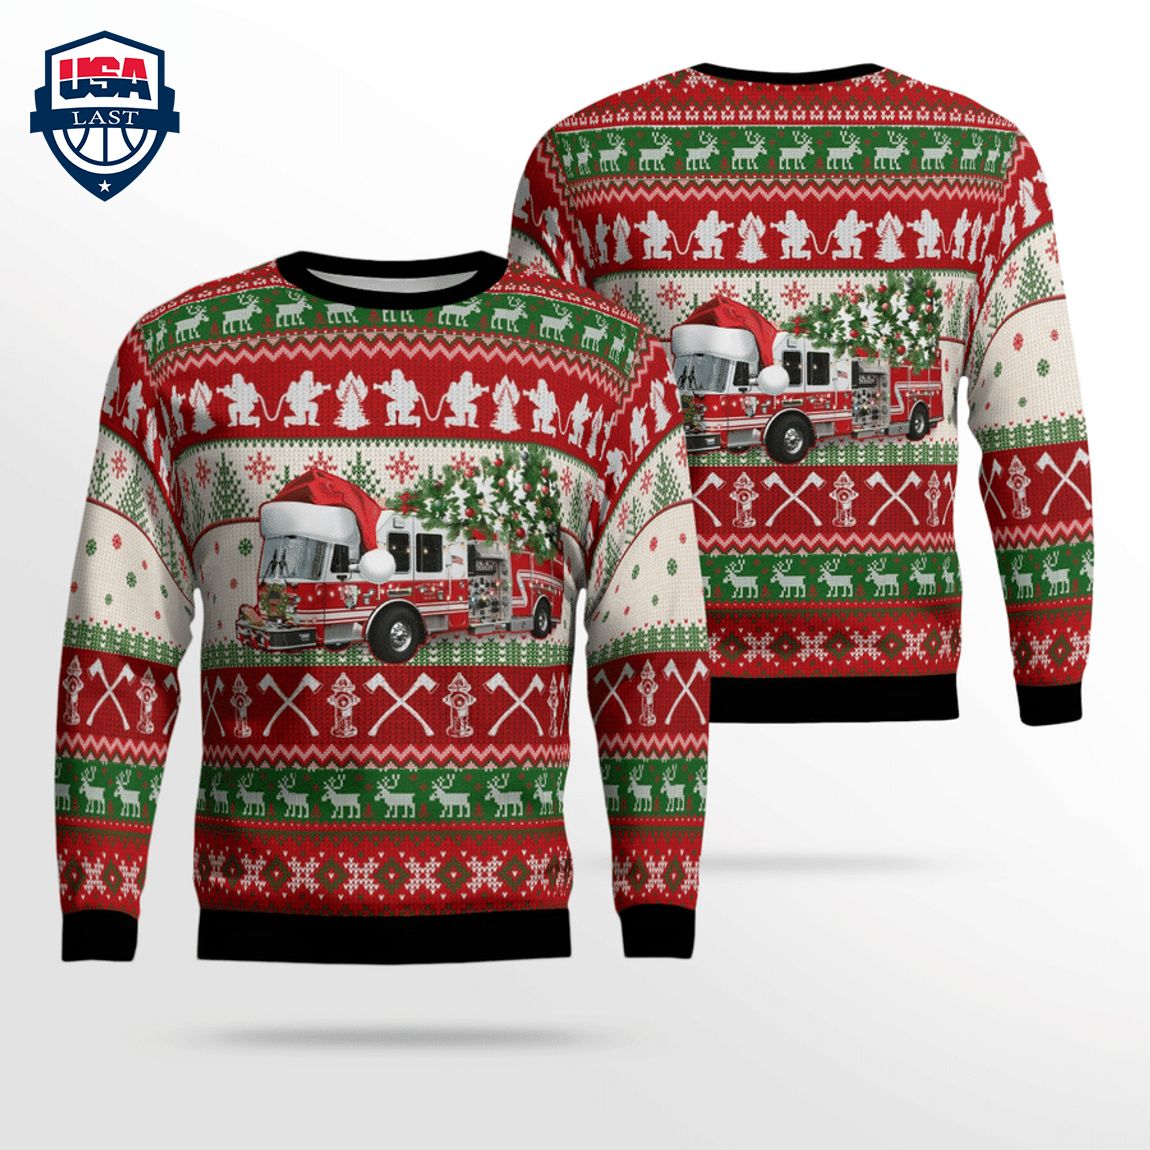 new-york-nanuet-fire-department-3d-christmas-sweater-1-Hdv9j.jpg